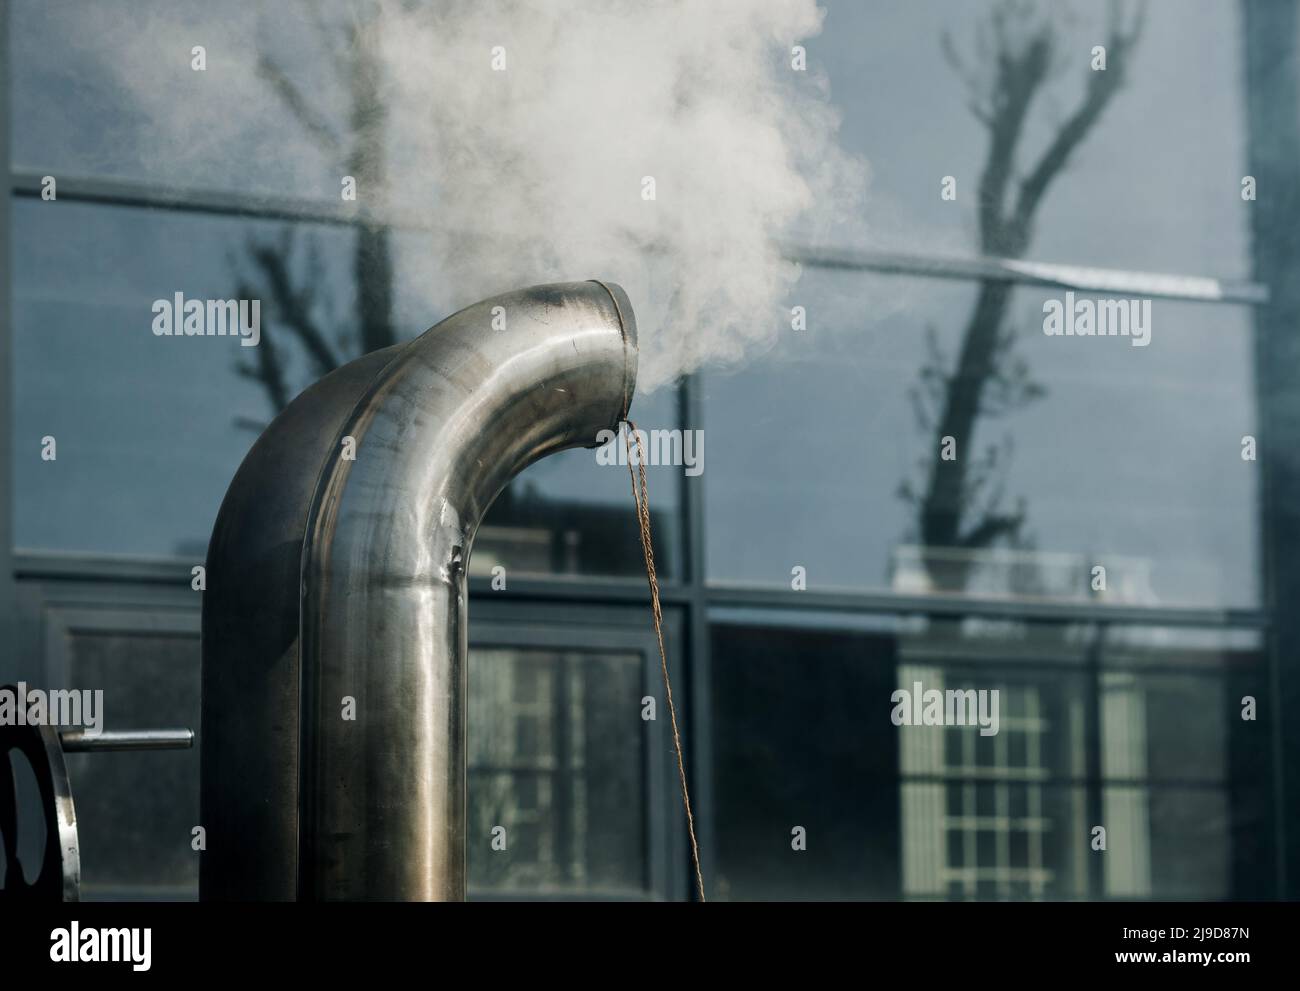 Chimenea de metal con estructura de tuberías de acero inoxidable con humo y vapor Foto de stock